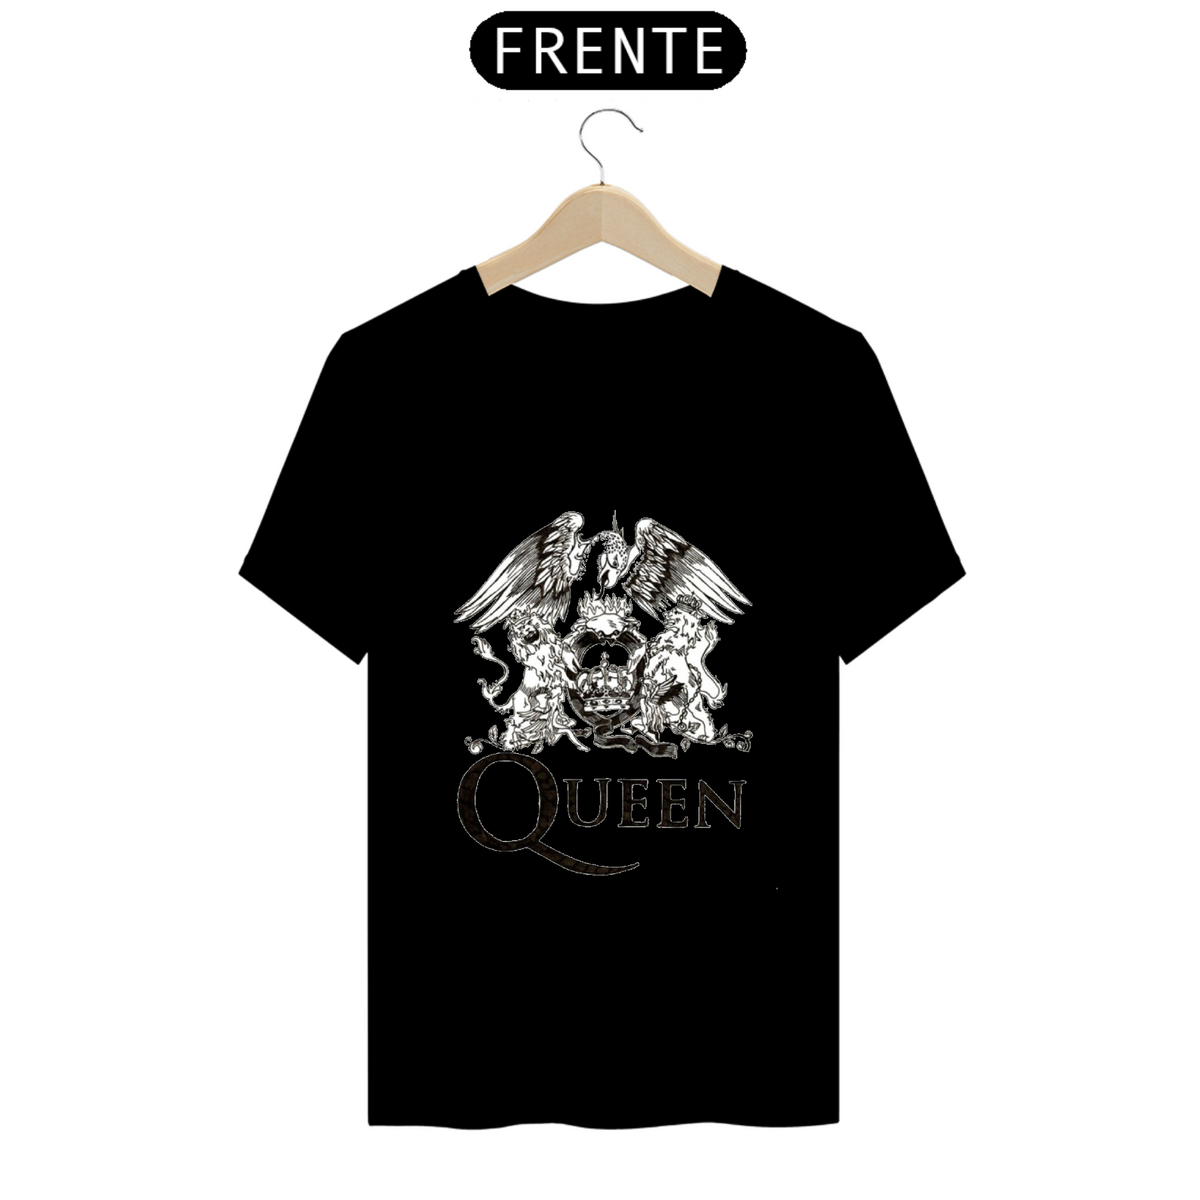 Nome do produto: Camiseta - Queen logo preto e branco